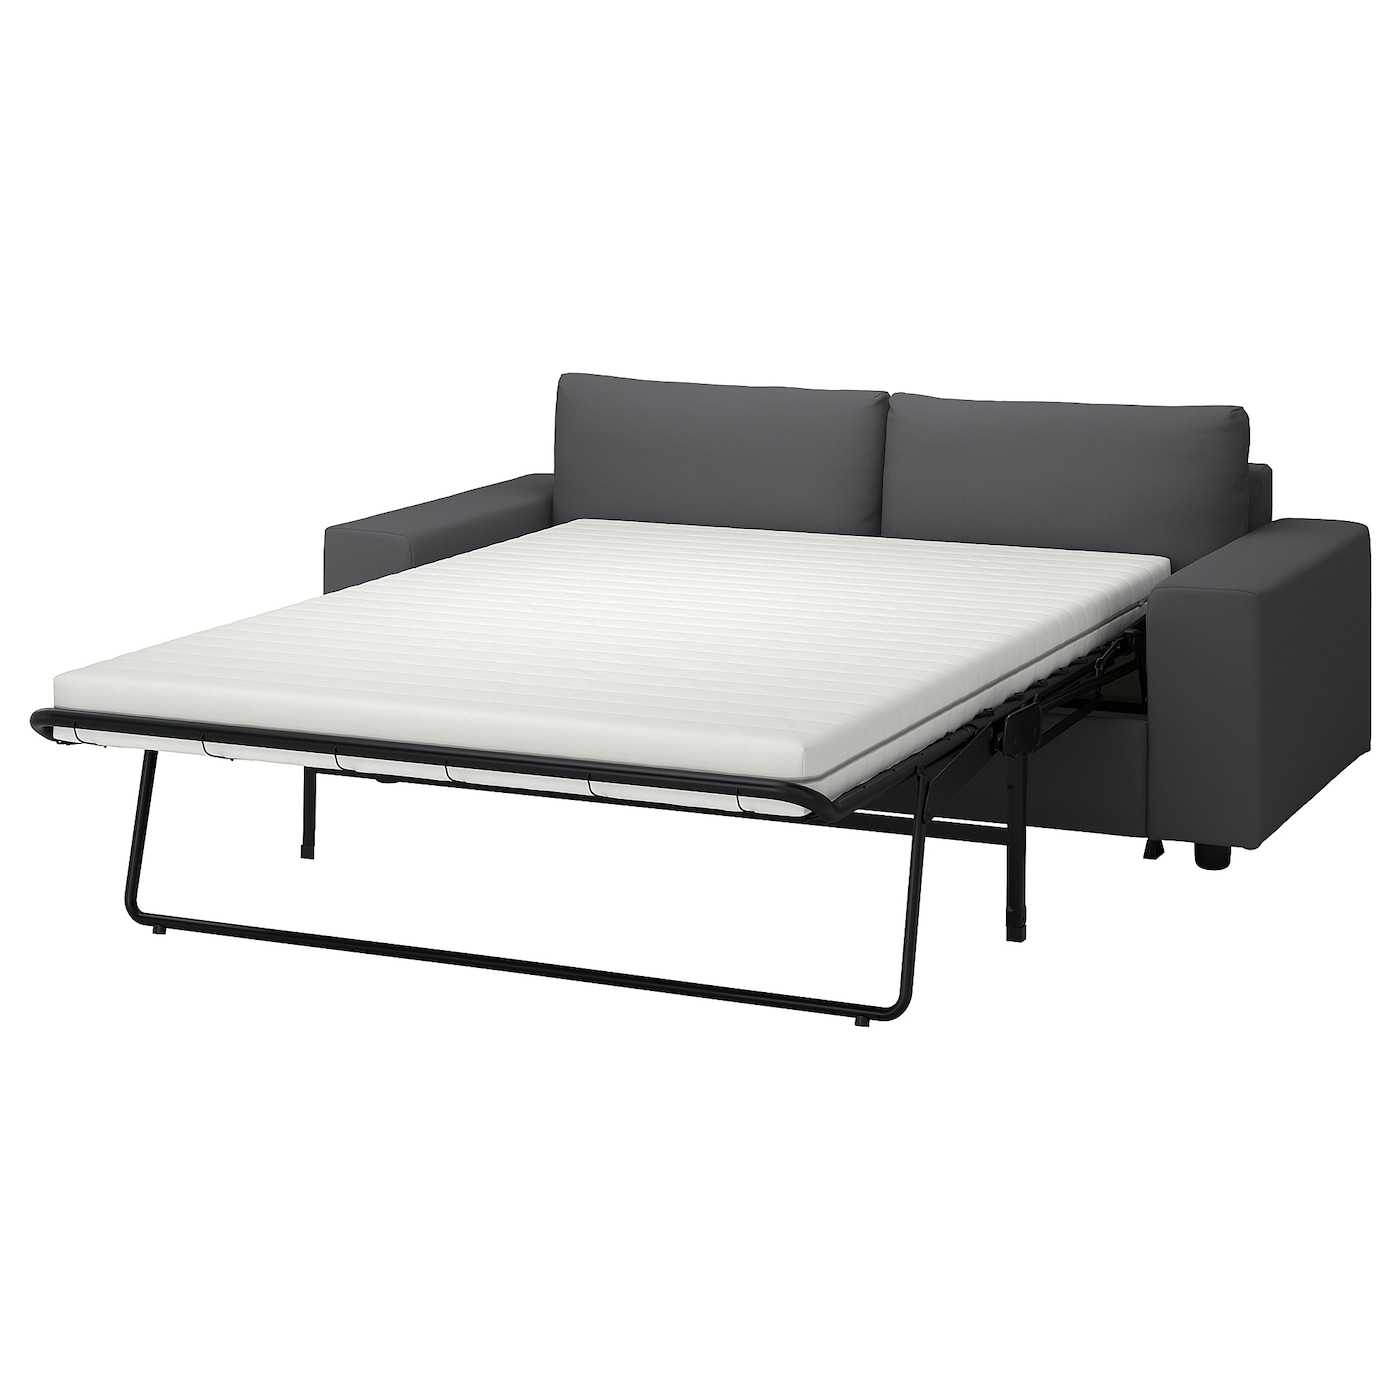 ВИМЛЕ 2 раскладывающихся дивана, с широкими подлокотниками/Халларп серый VIMLE IKEA